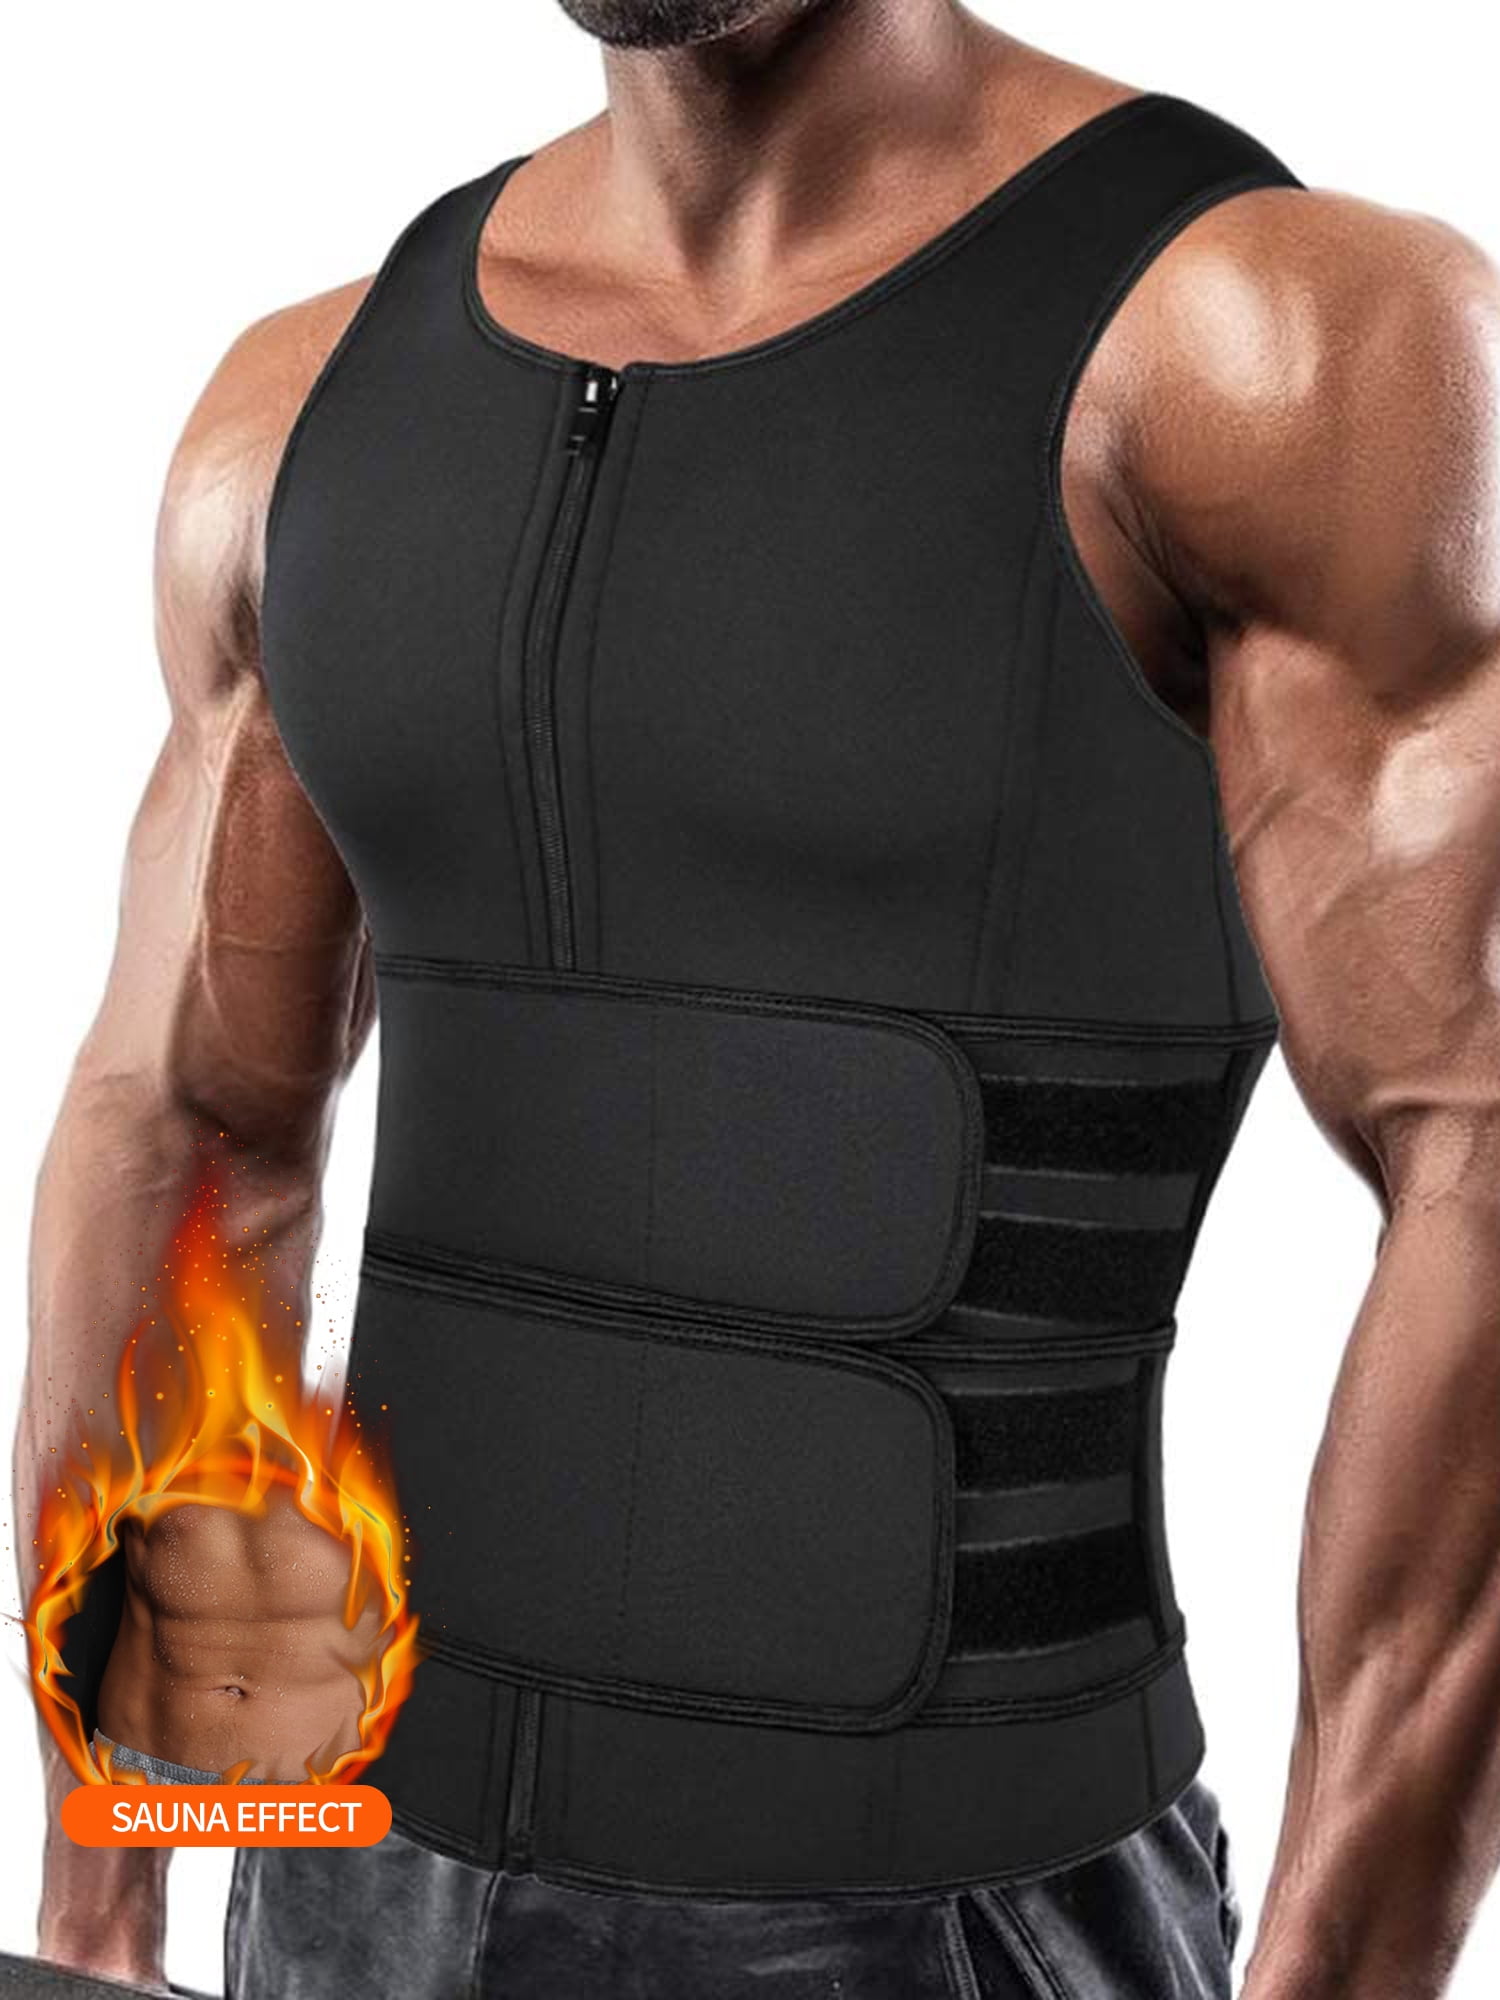 Gray/Black Cimkiz Sauna Vest for Men Size M 